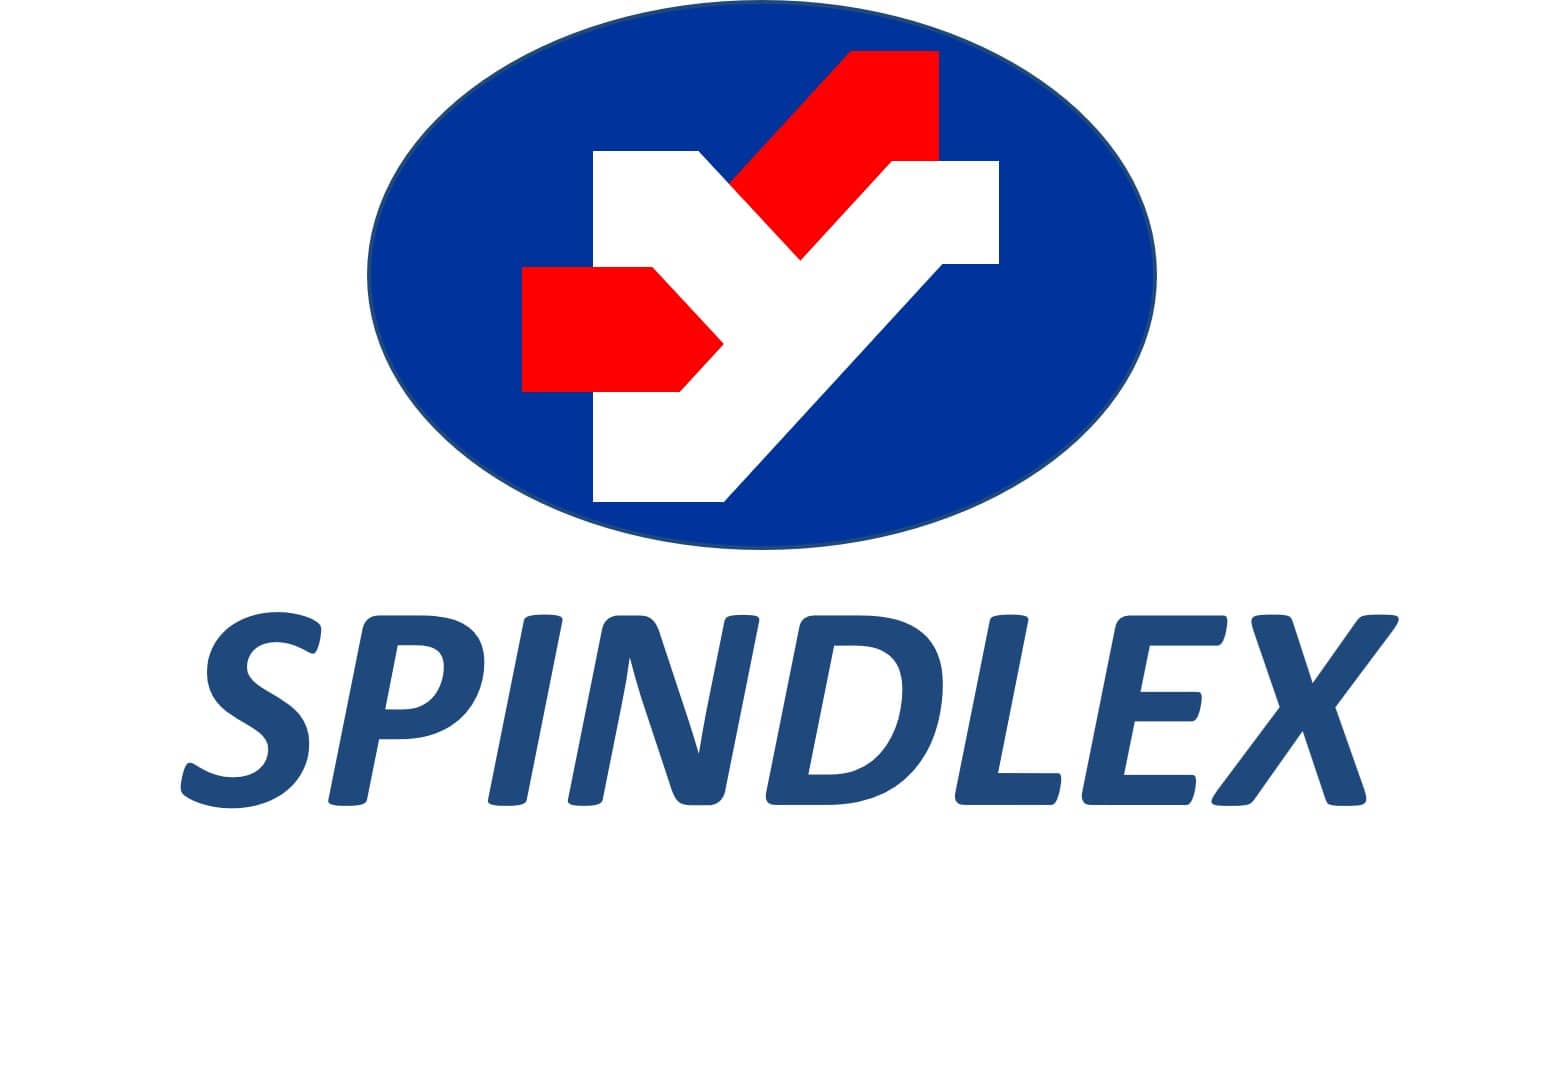 SPINDLEX